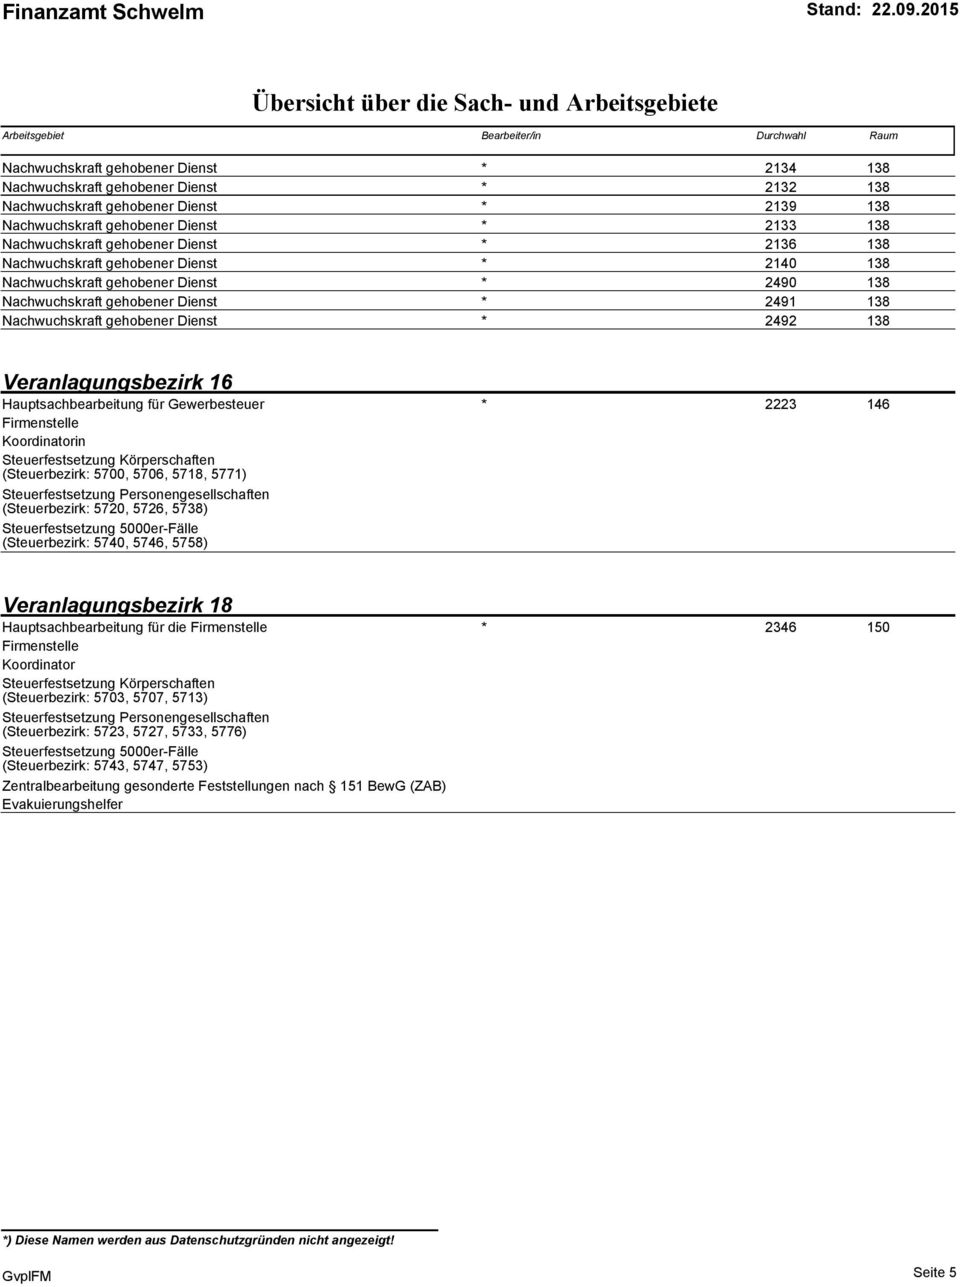 Veranlagungsbezirk 16 Hauptsachbearbeitung für Gewerbesteuer * (0.